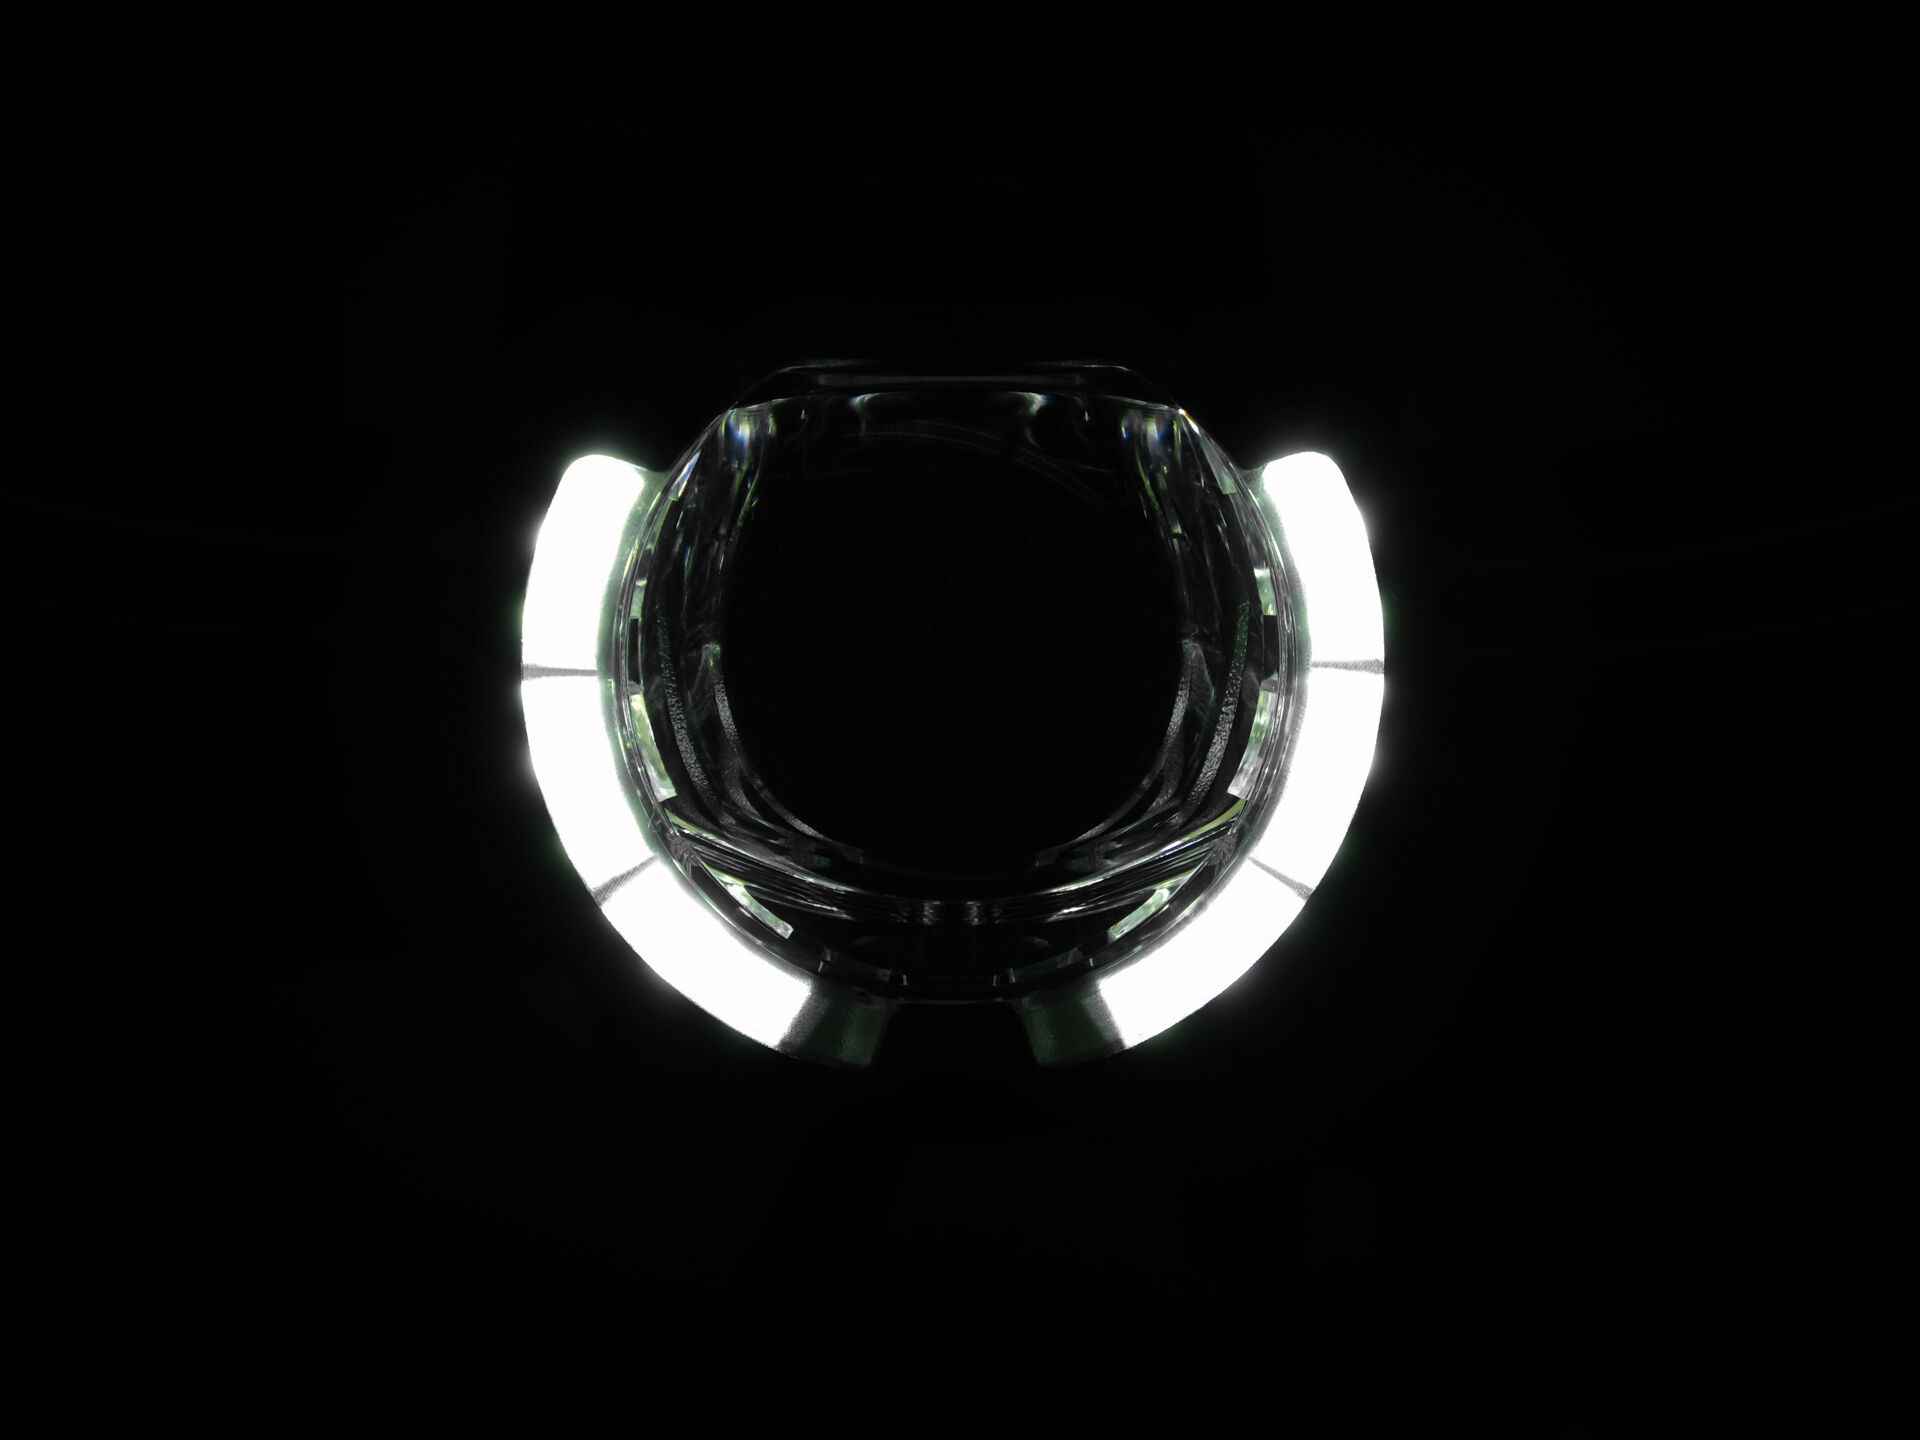 SL F BOSCH Purion/Kiox LED-Scheinwerfer mit Auf-/Abblendlicht, Schwarz